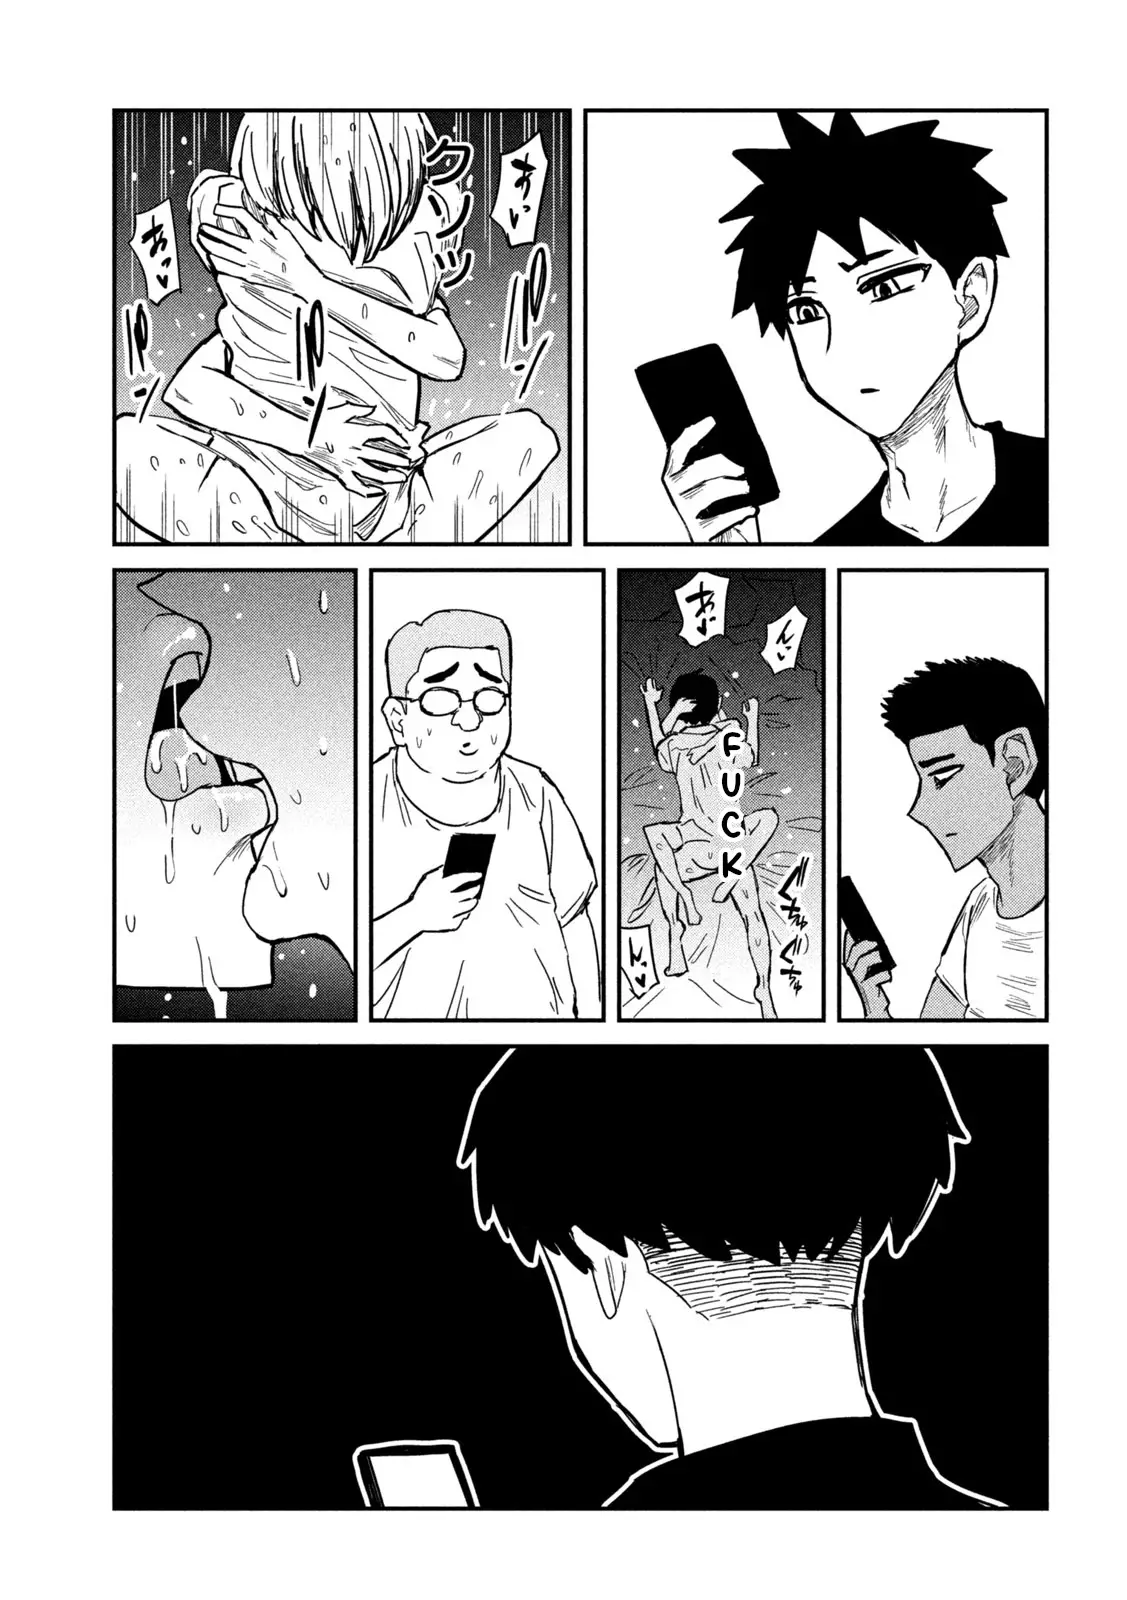 Dare Demo Dakeru Kimi Ga Suki - 15 page 15-4844a7a4